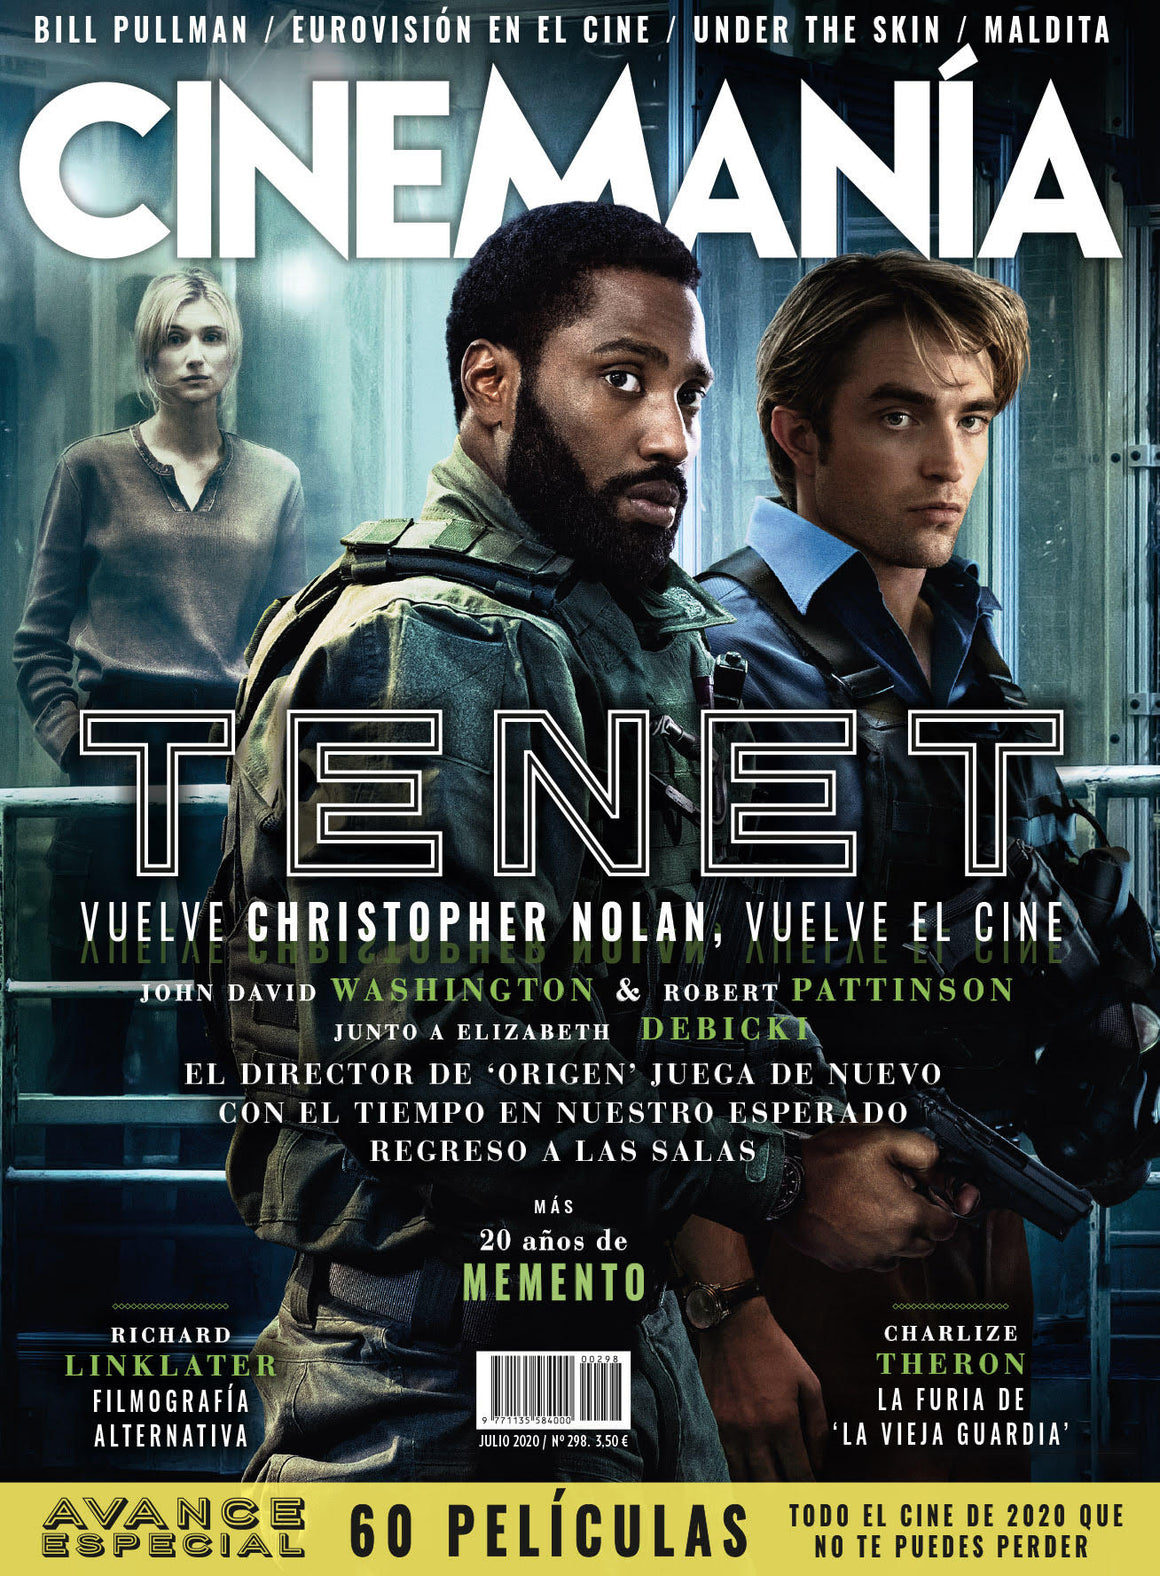 NEW! ROBERT PATTINSON TENET CHRISTOPHER NOLAN Cinemanía magazine July 2020